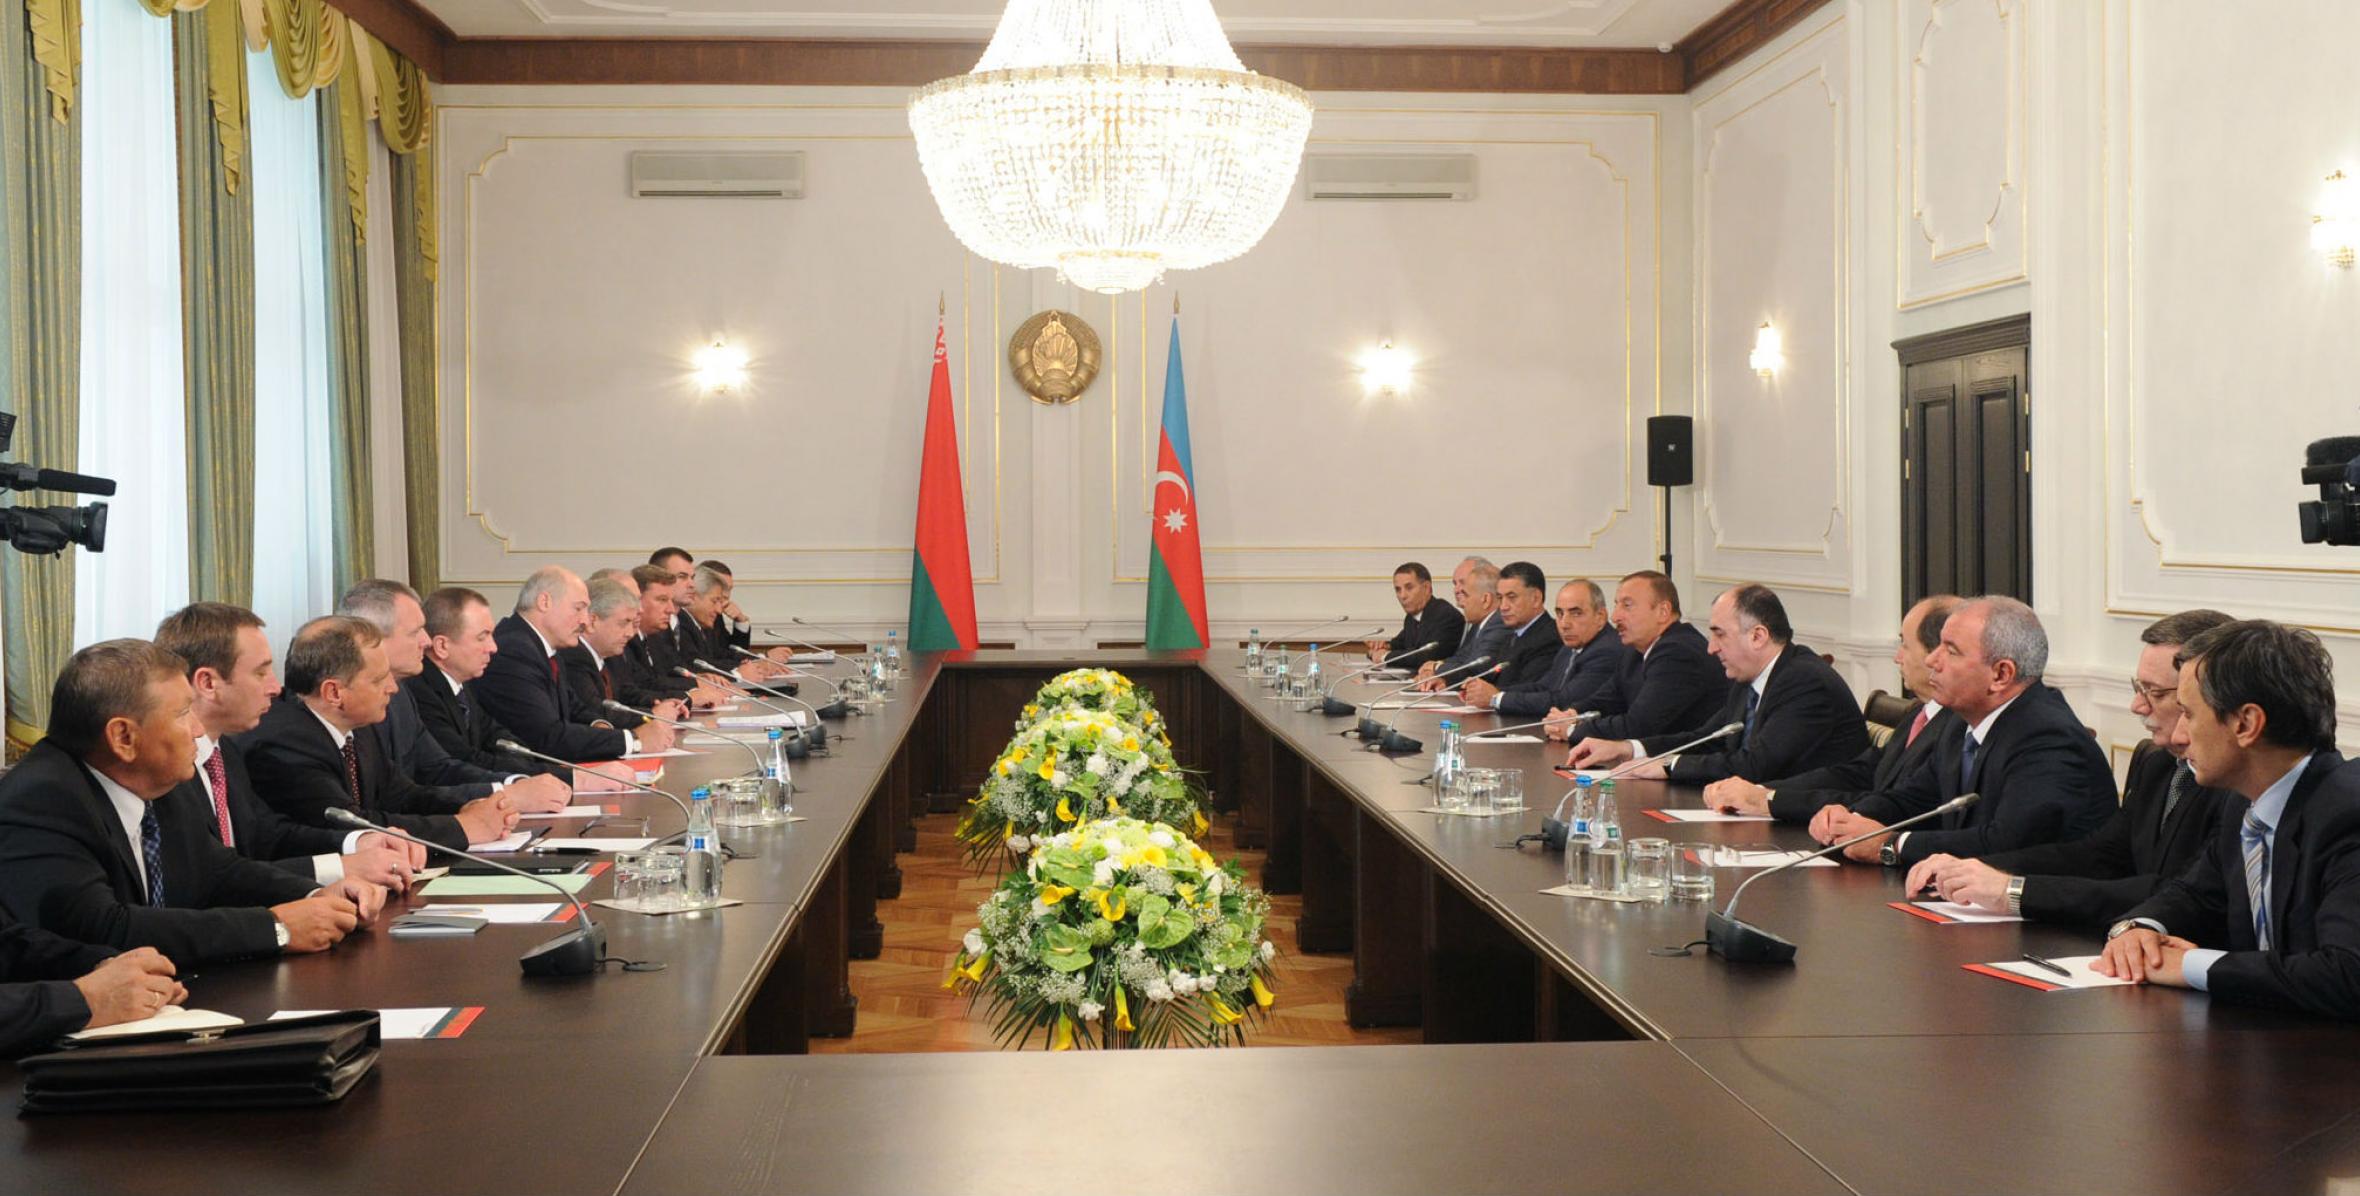 Состоялась встреча Ильхама Алиева и Президента Республики Беларусь Александра Лукашенко в расширенном составе с участием делегаций